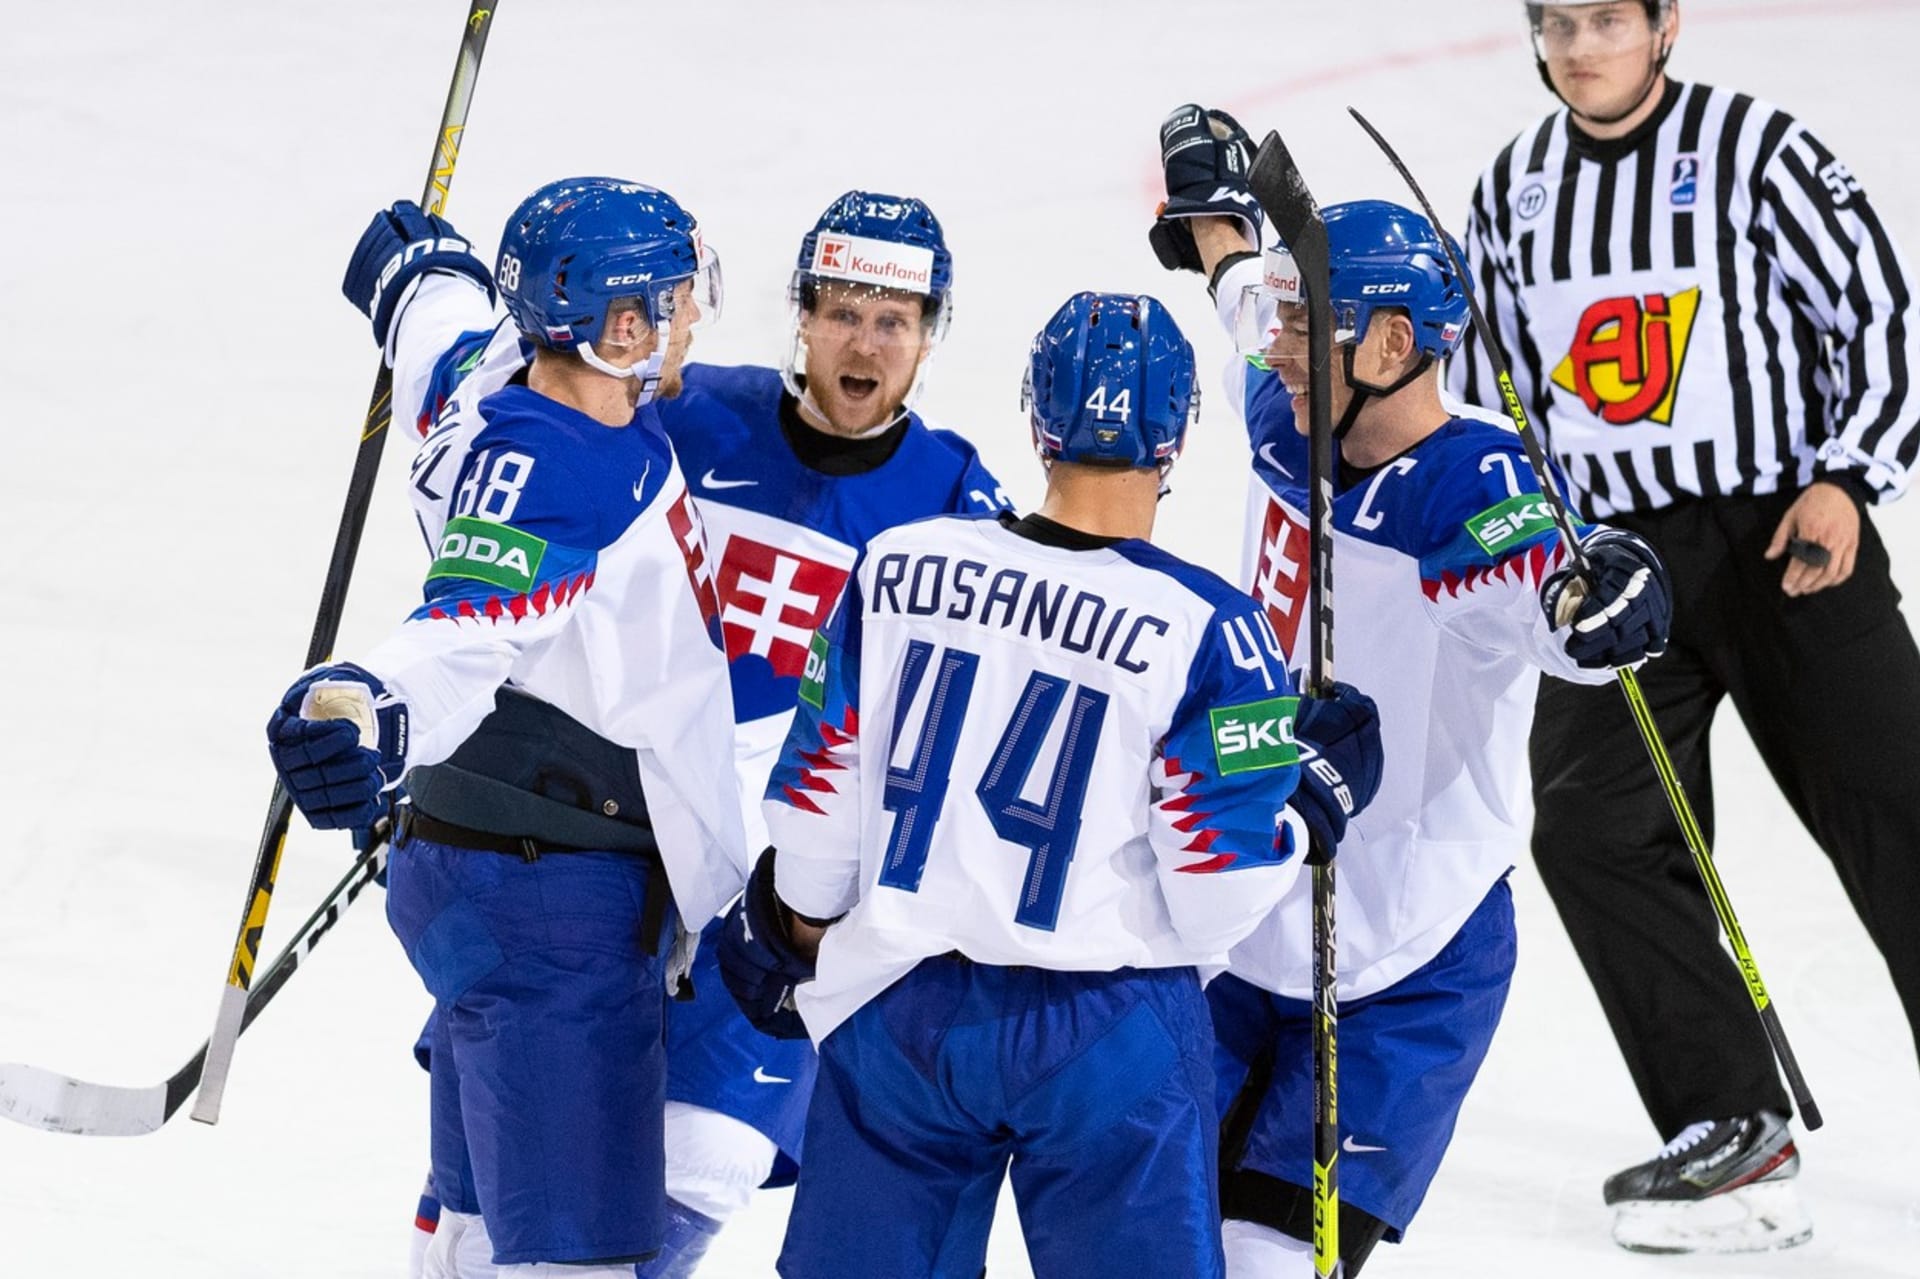 Slovenští hokejisté se radují z jednoho ze vstřelených gólů proti Velké Británii.